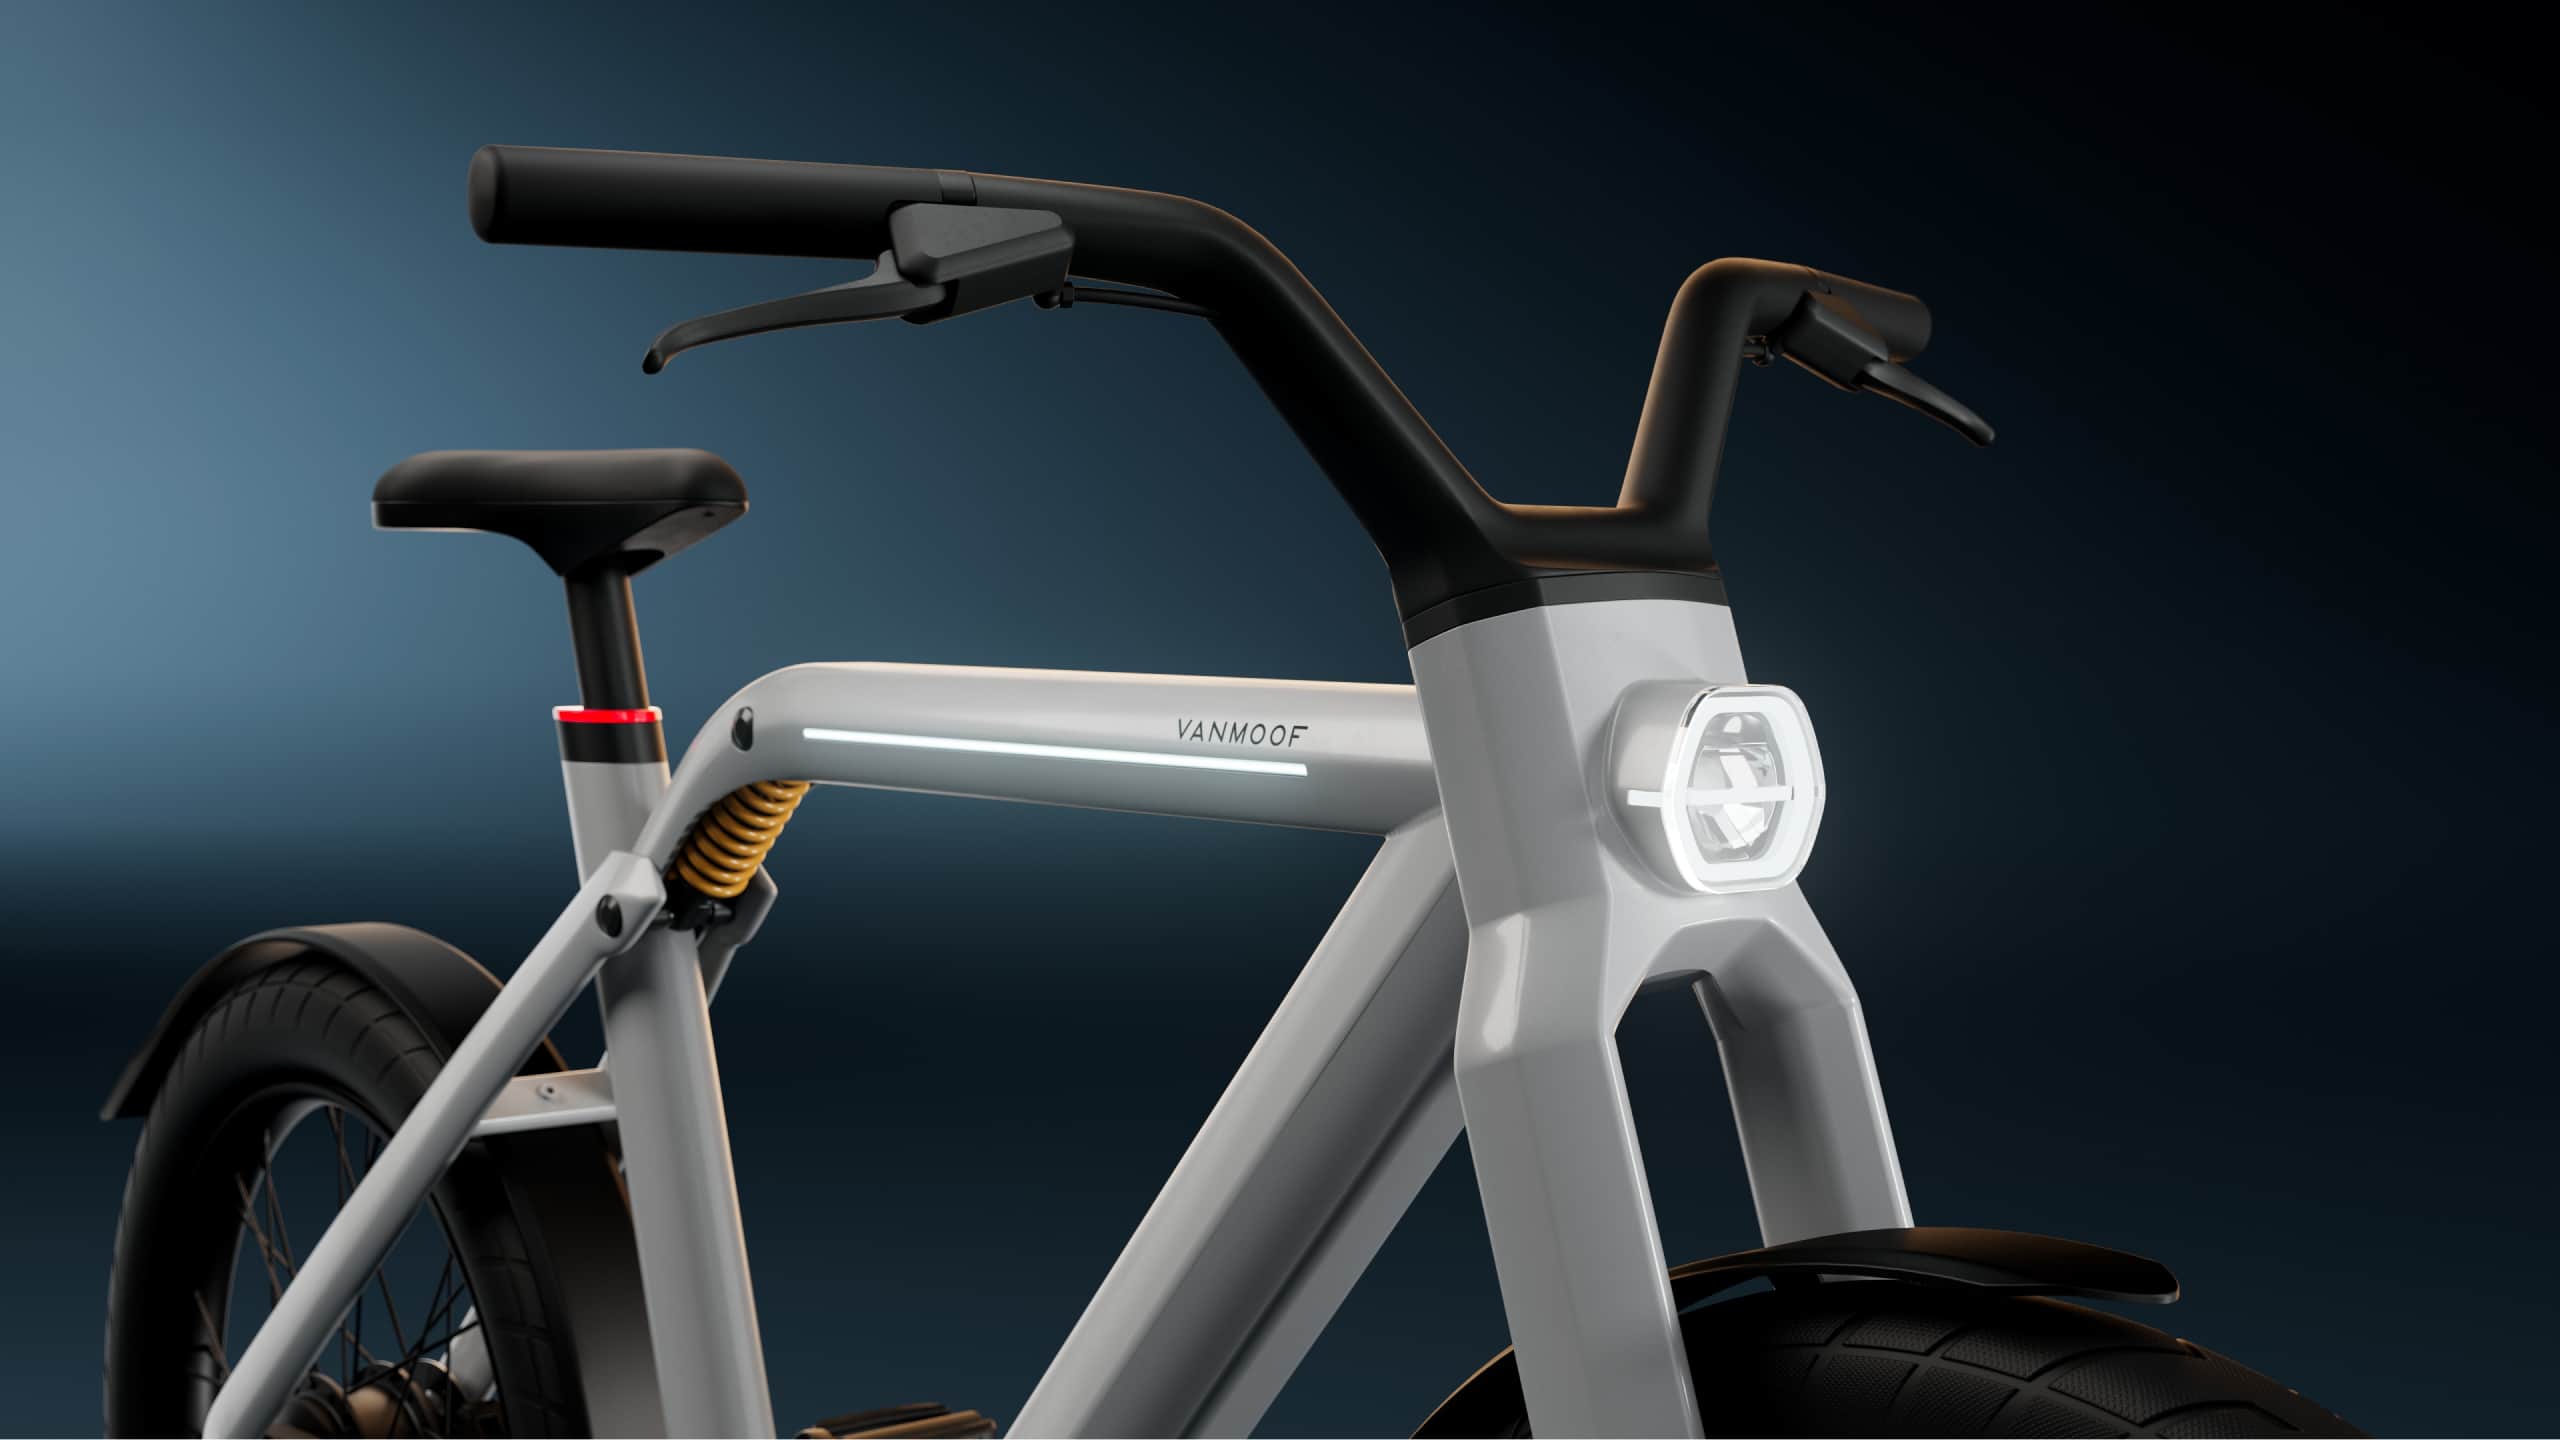 VanMoof ha presentato una bicicletta elettrica che può viaggiare a 60 km/h